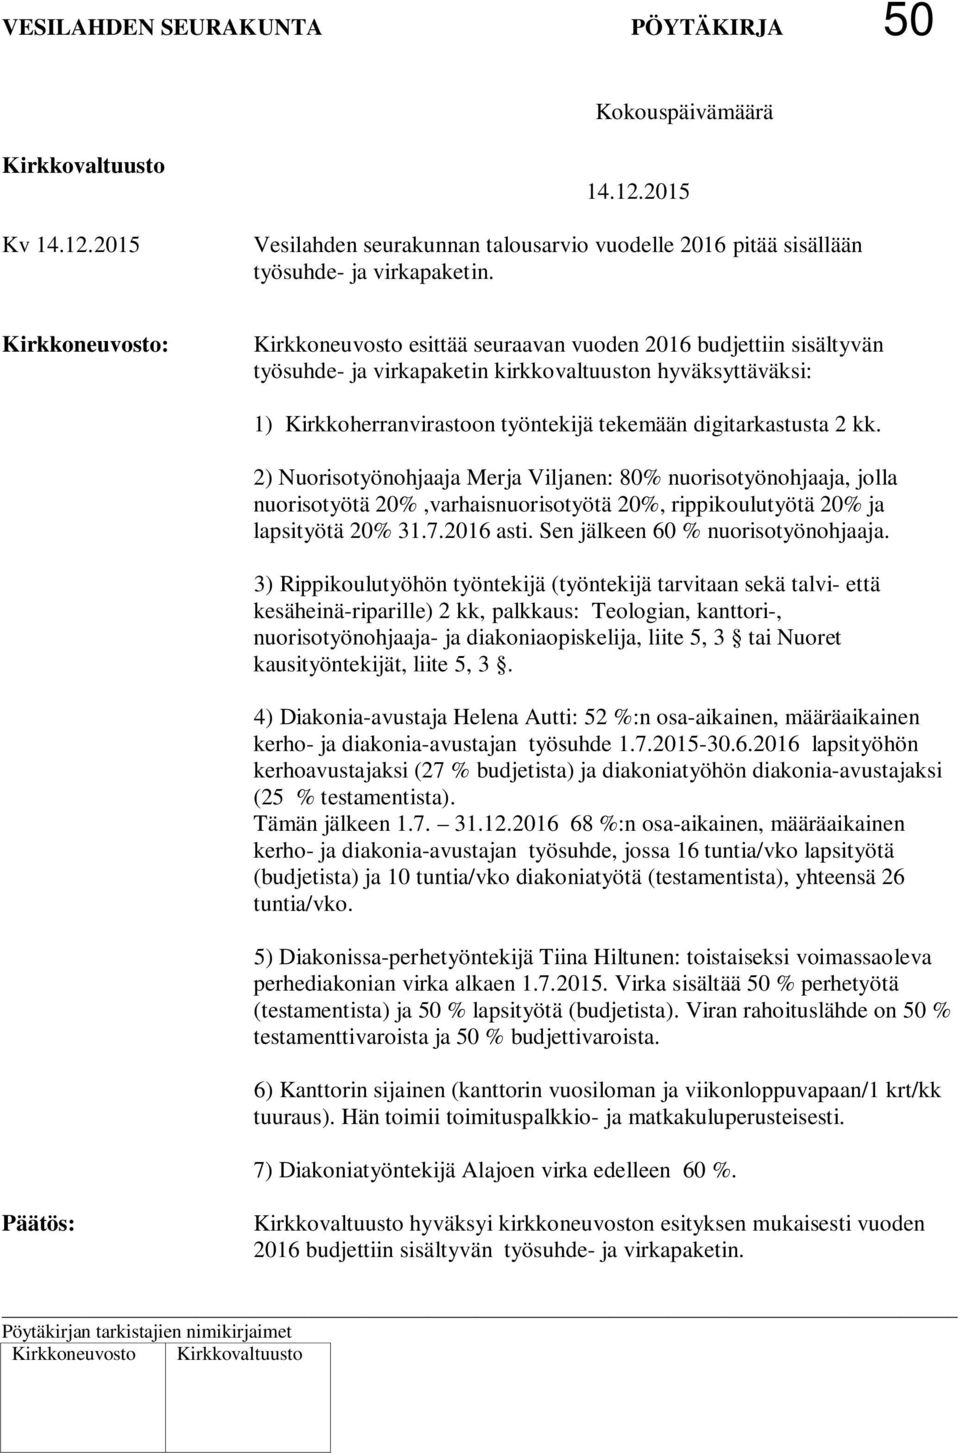 digitarkastusta 2 kk. 2) Nuorisotyönohjaaja Merja Viljanen: 80% nuorisotyönohjaaja, jolla nuorisotyötä 20%,varhaisnuorisotyötä 20%, rippikoulutyötä 20% ja lapsityötä 20% 31.7.2016 asti.